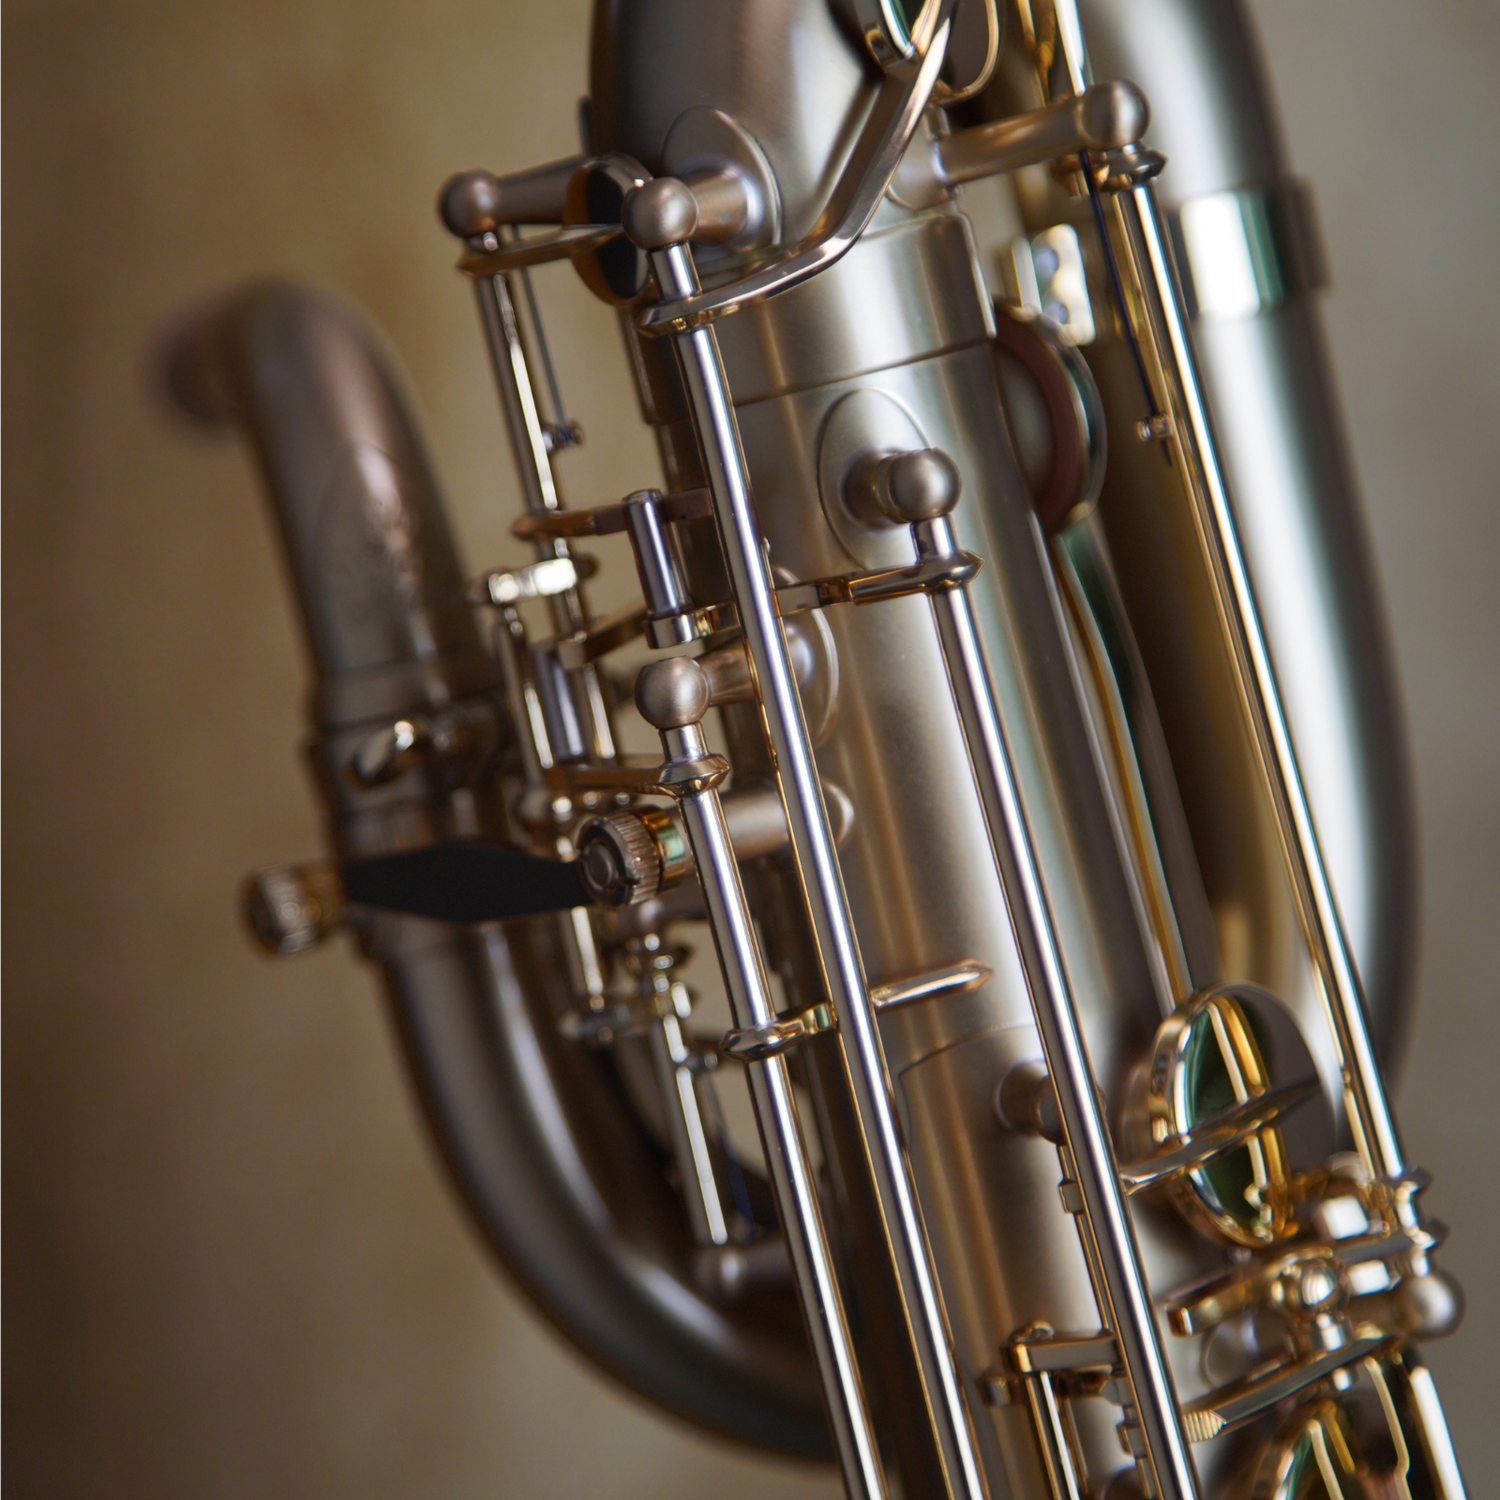 Baritone saxophones